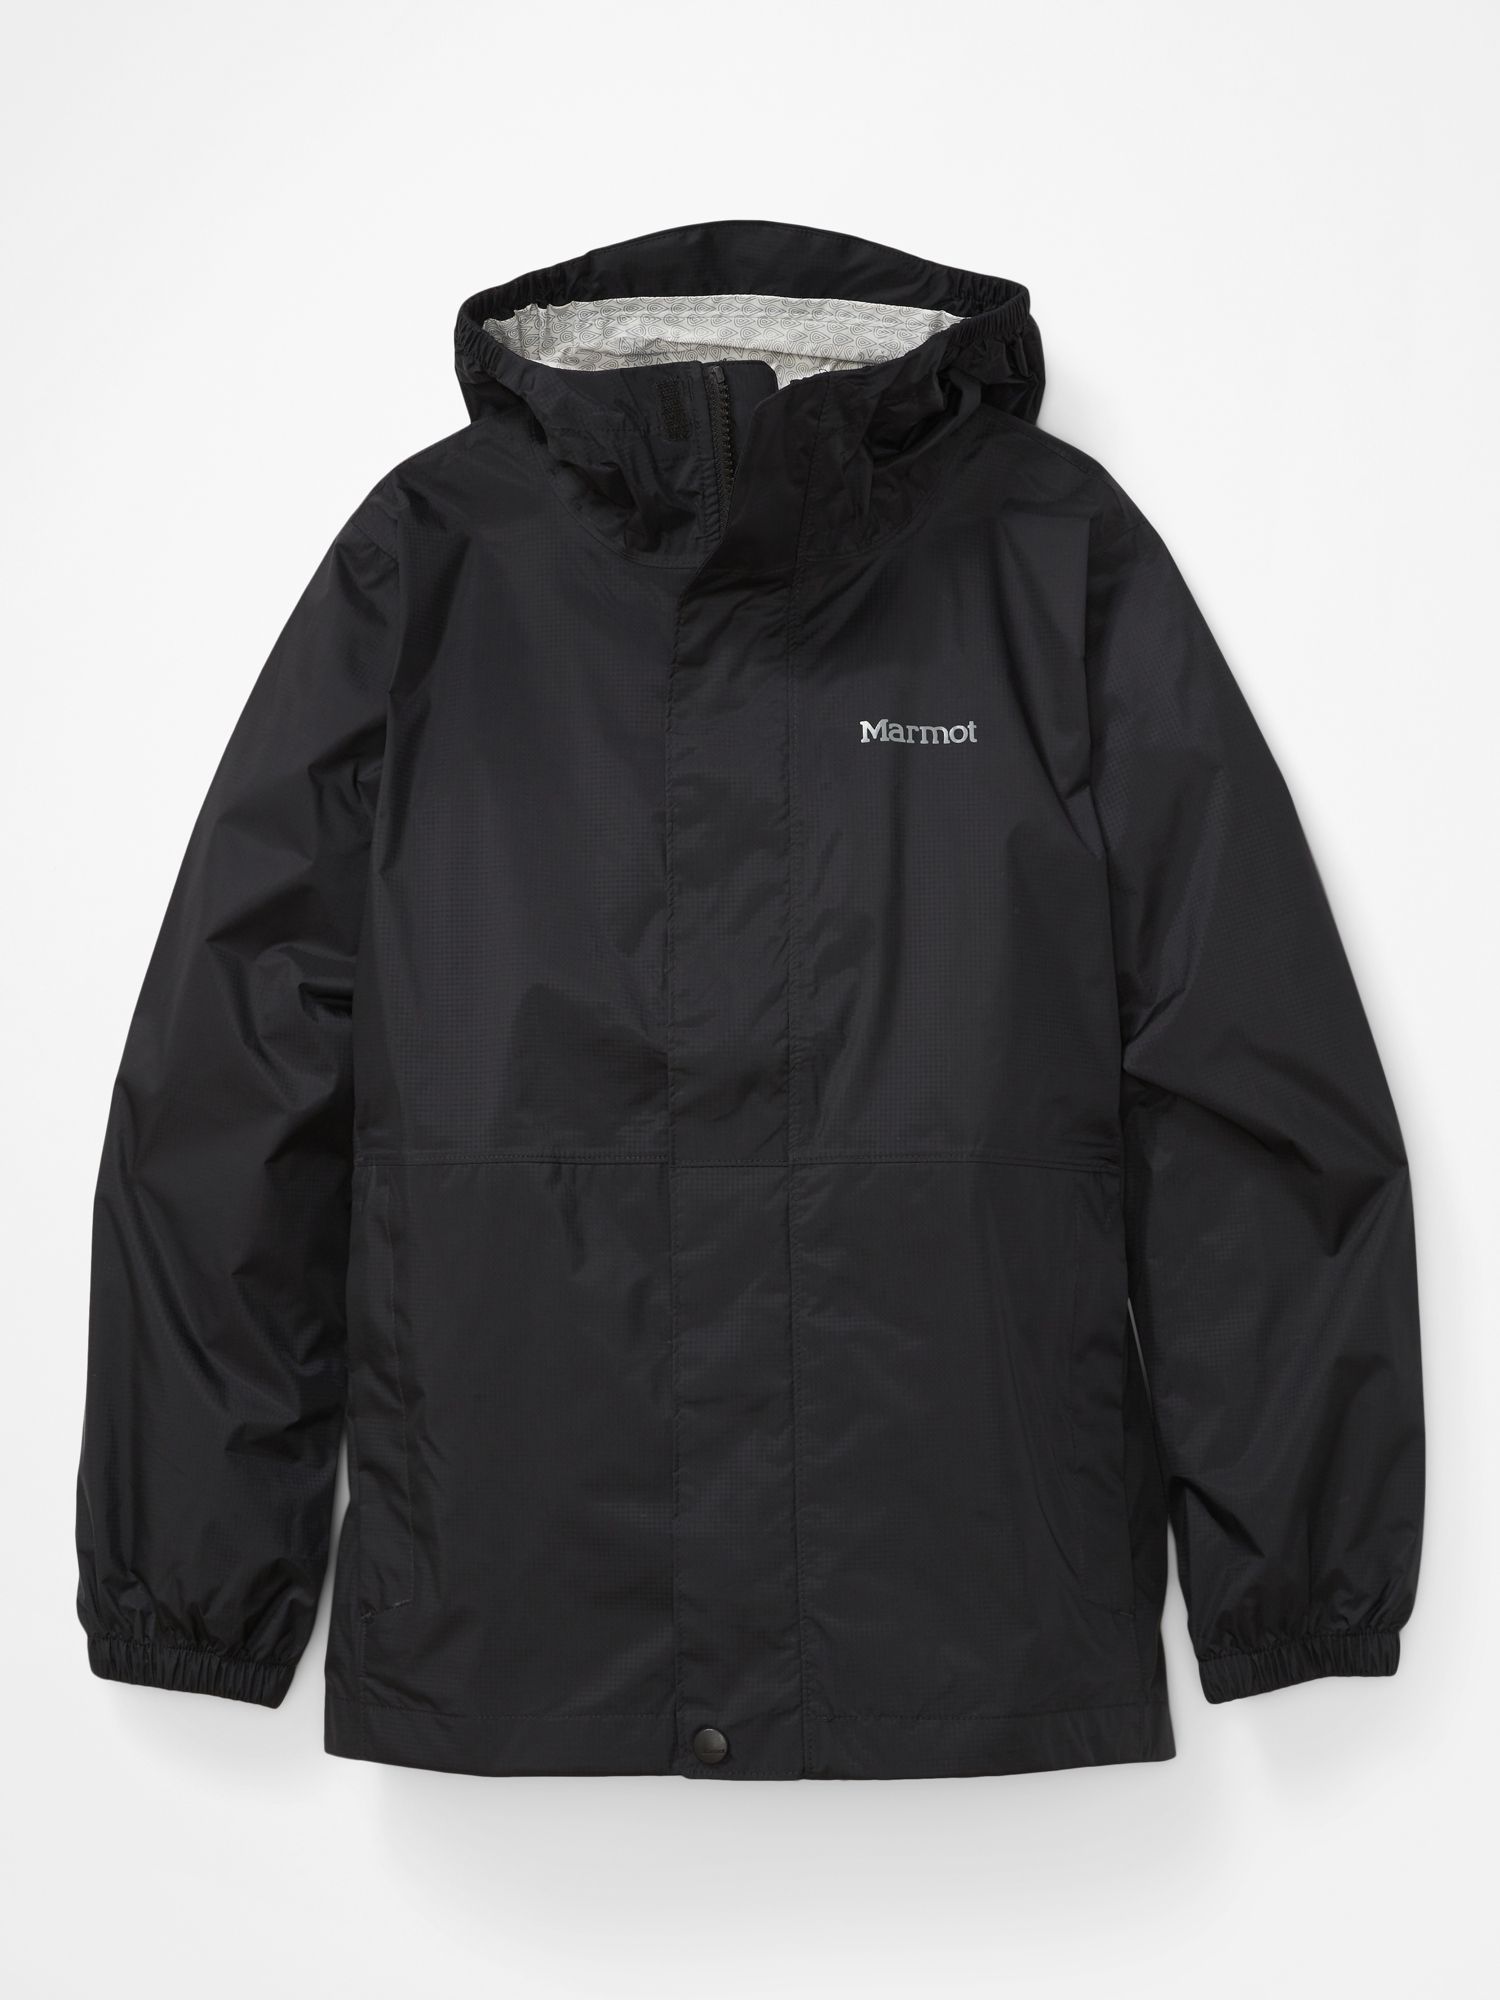 Details about   Marmot Precip Rain Youth Boy,Girl Jacket Hood Ultra light,waterproof jacket 